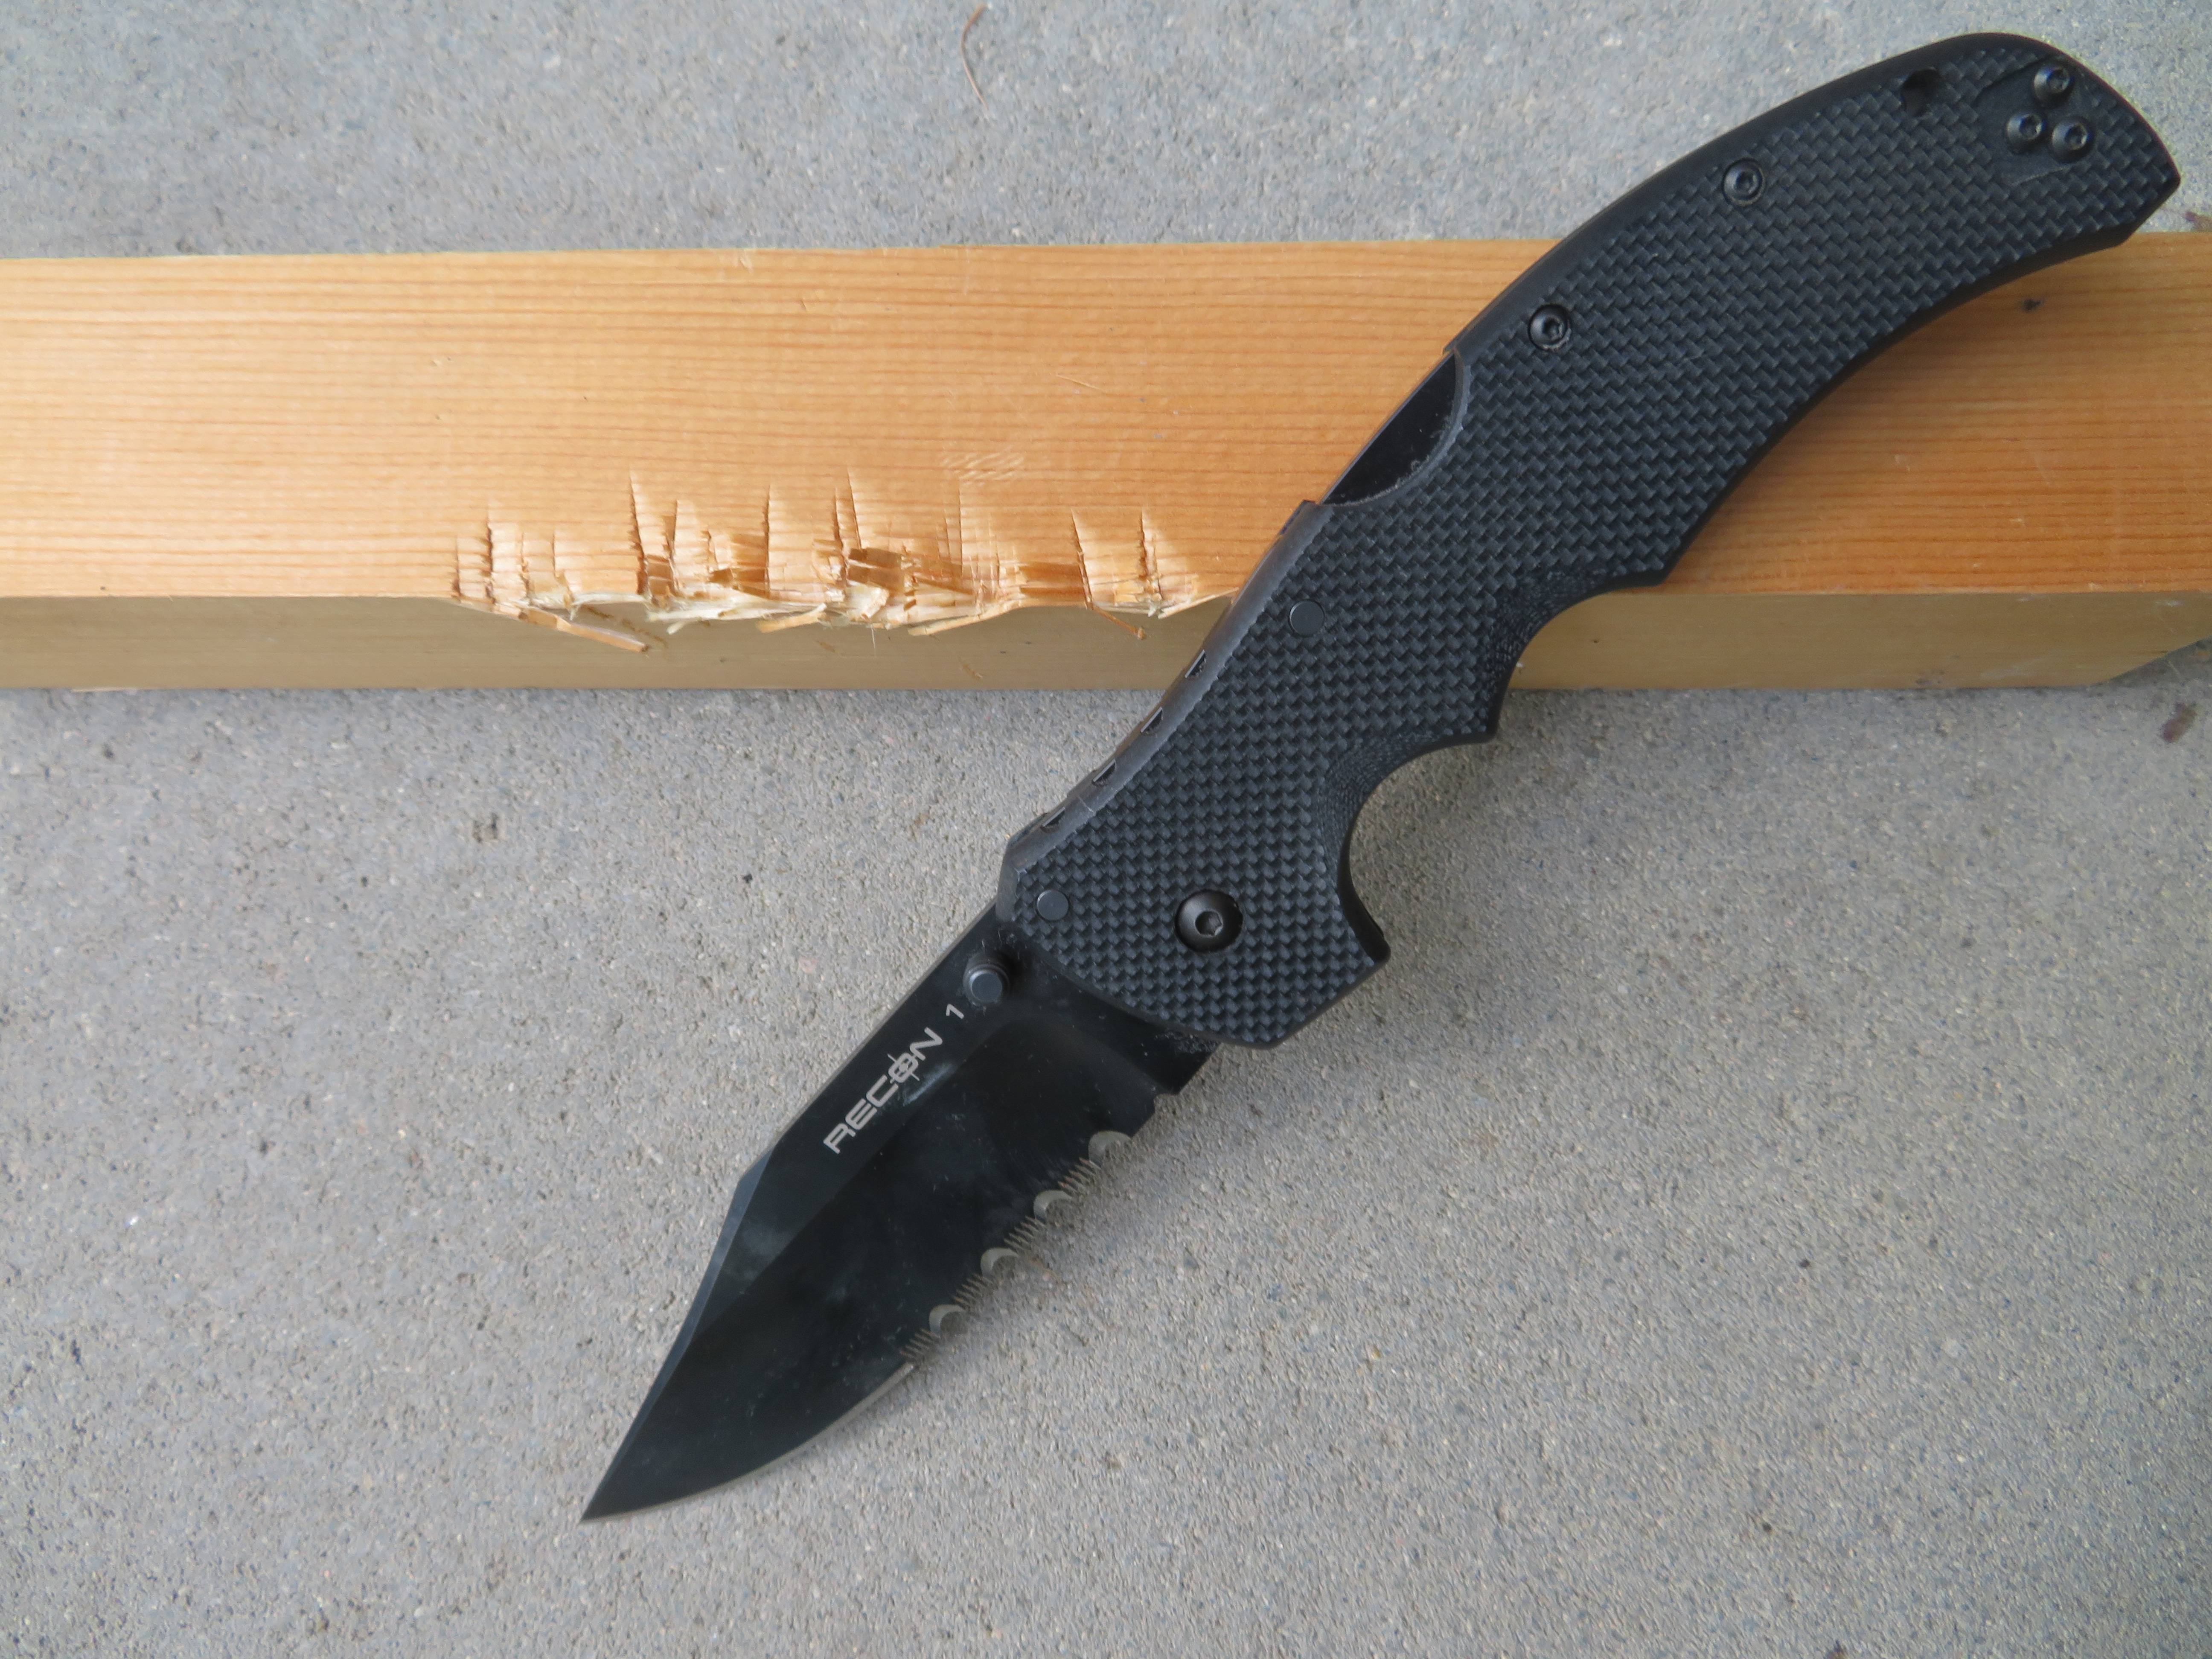 Test pojistky nože Recon 1 od Cold Steel dopadl také výborně, ani po třiceti razantních úderech rubovou stranou čepele do dřevěného trámku nedošlo k poškození nože či dokonce k jeho zavření.